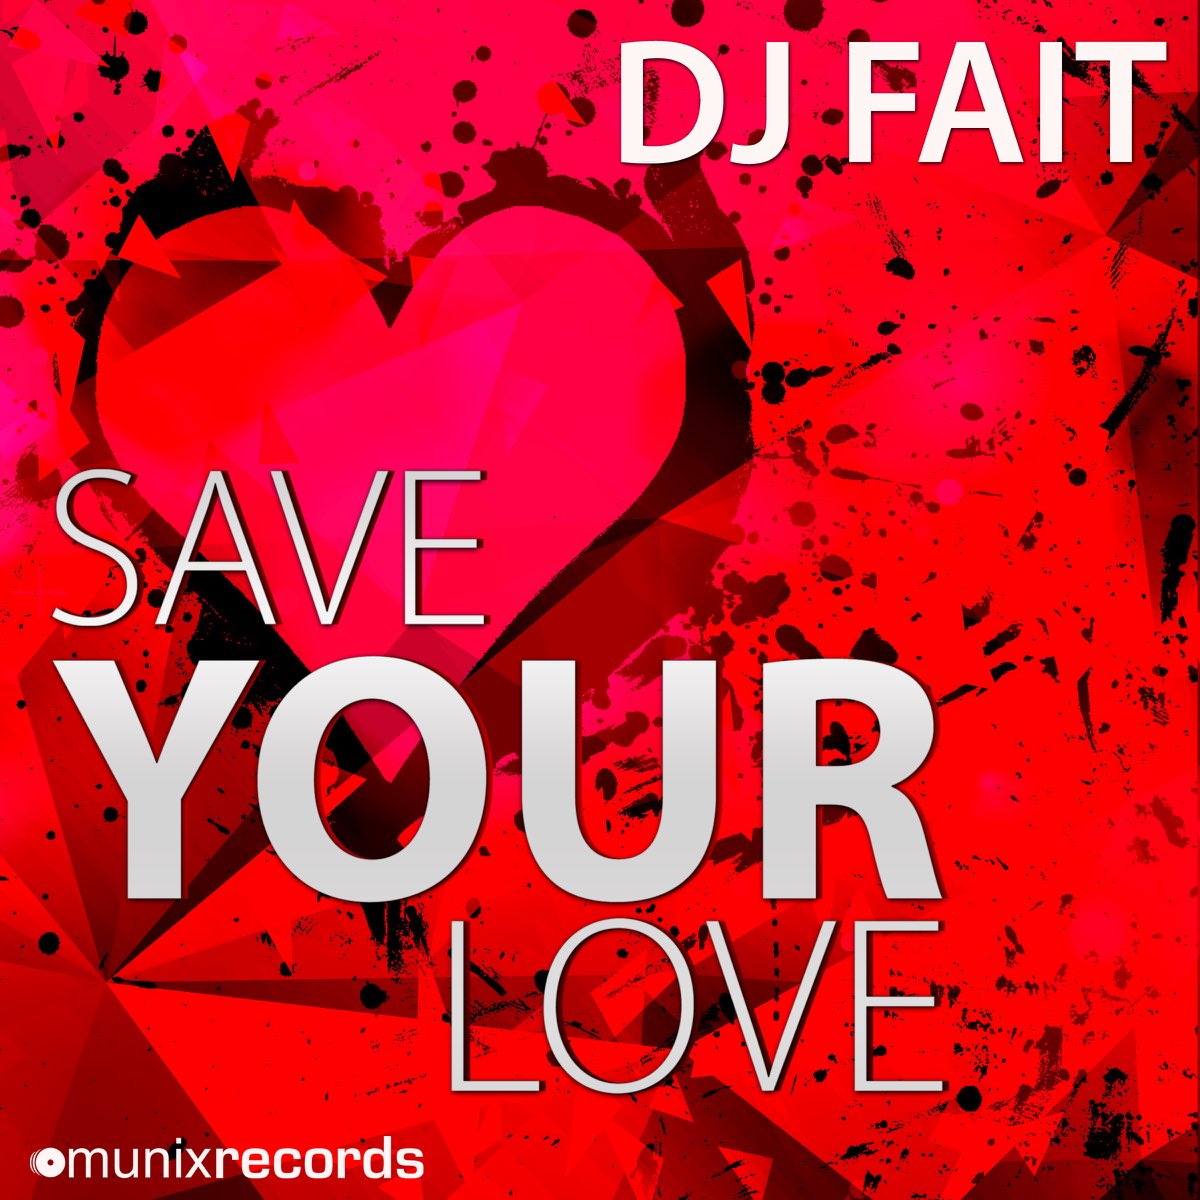 Your love remixes. Save your Love. Your Love (Mixed). Fait for Love. Uzor Love.